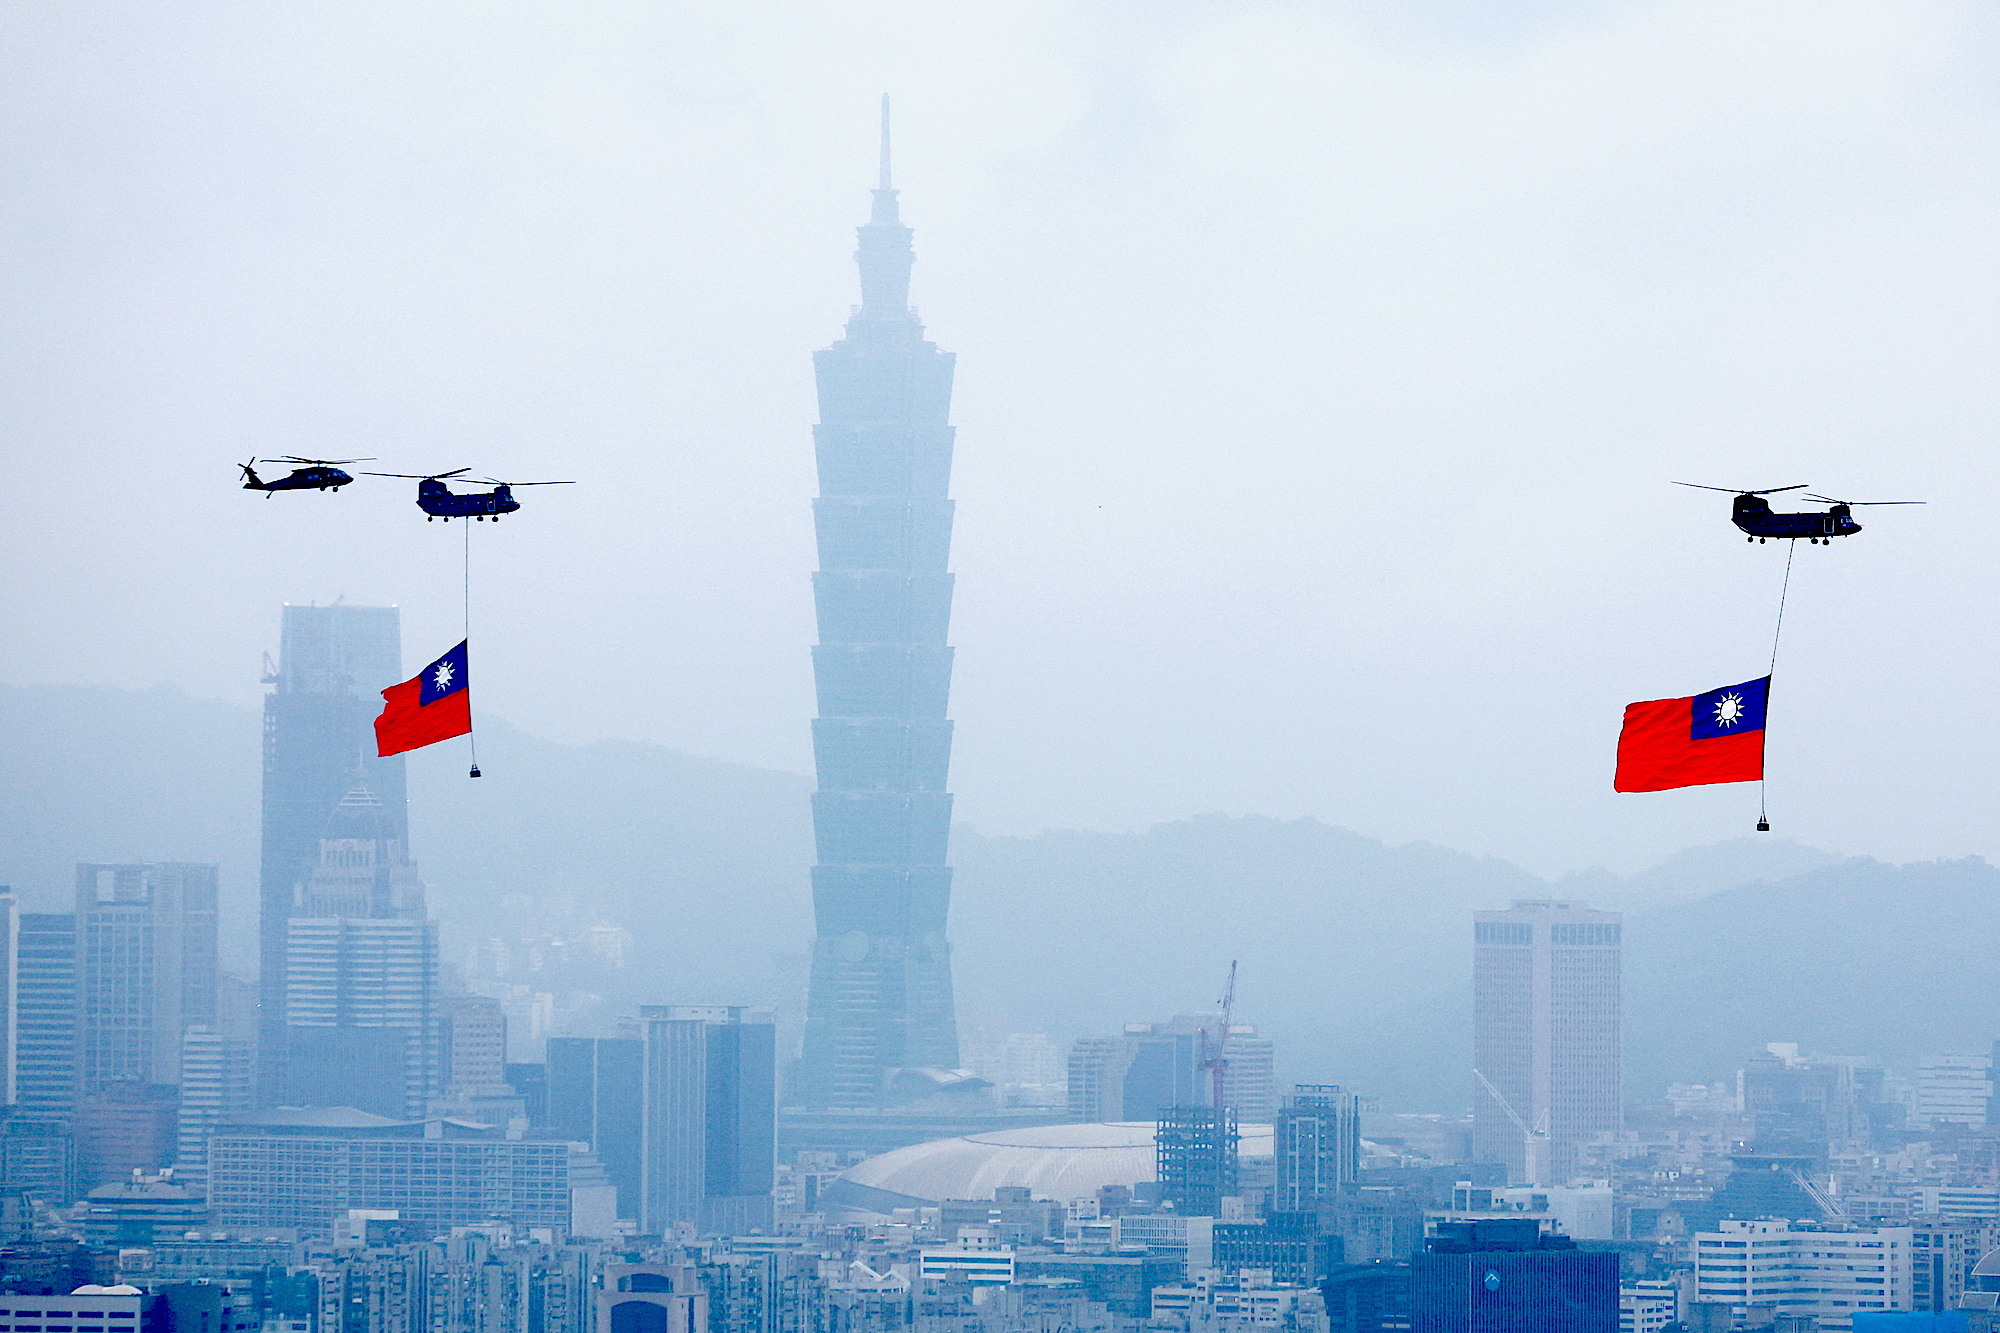 Taïwan : le lancement d'un satellite chinois sème la panique à quelques jours des élections